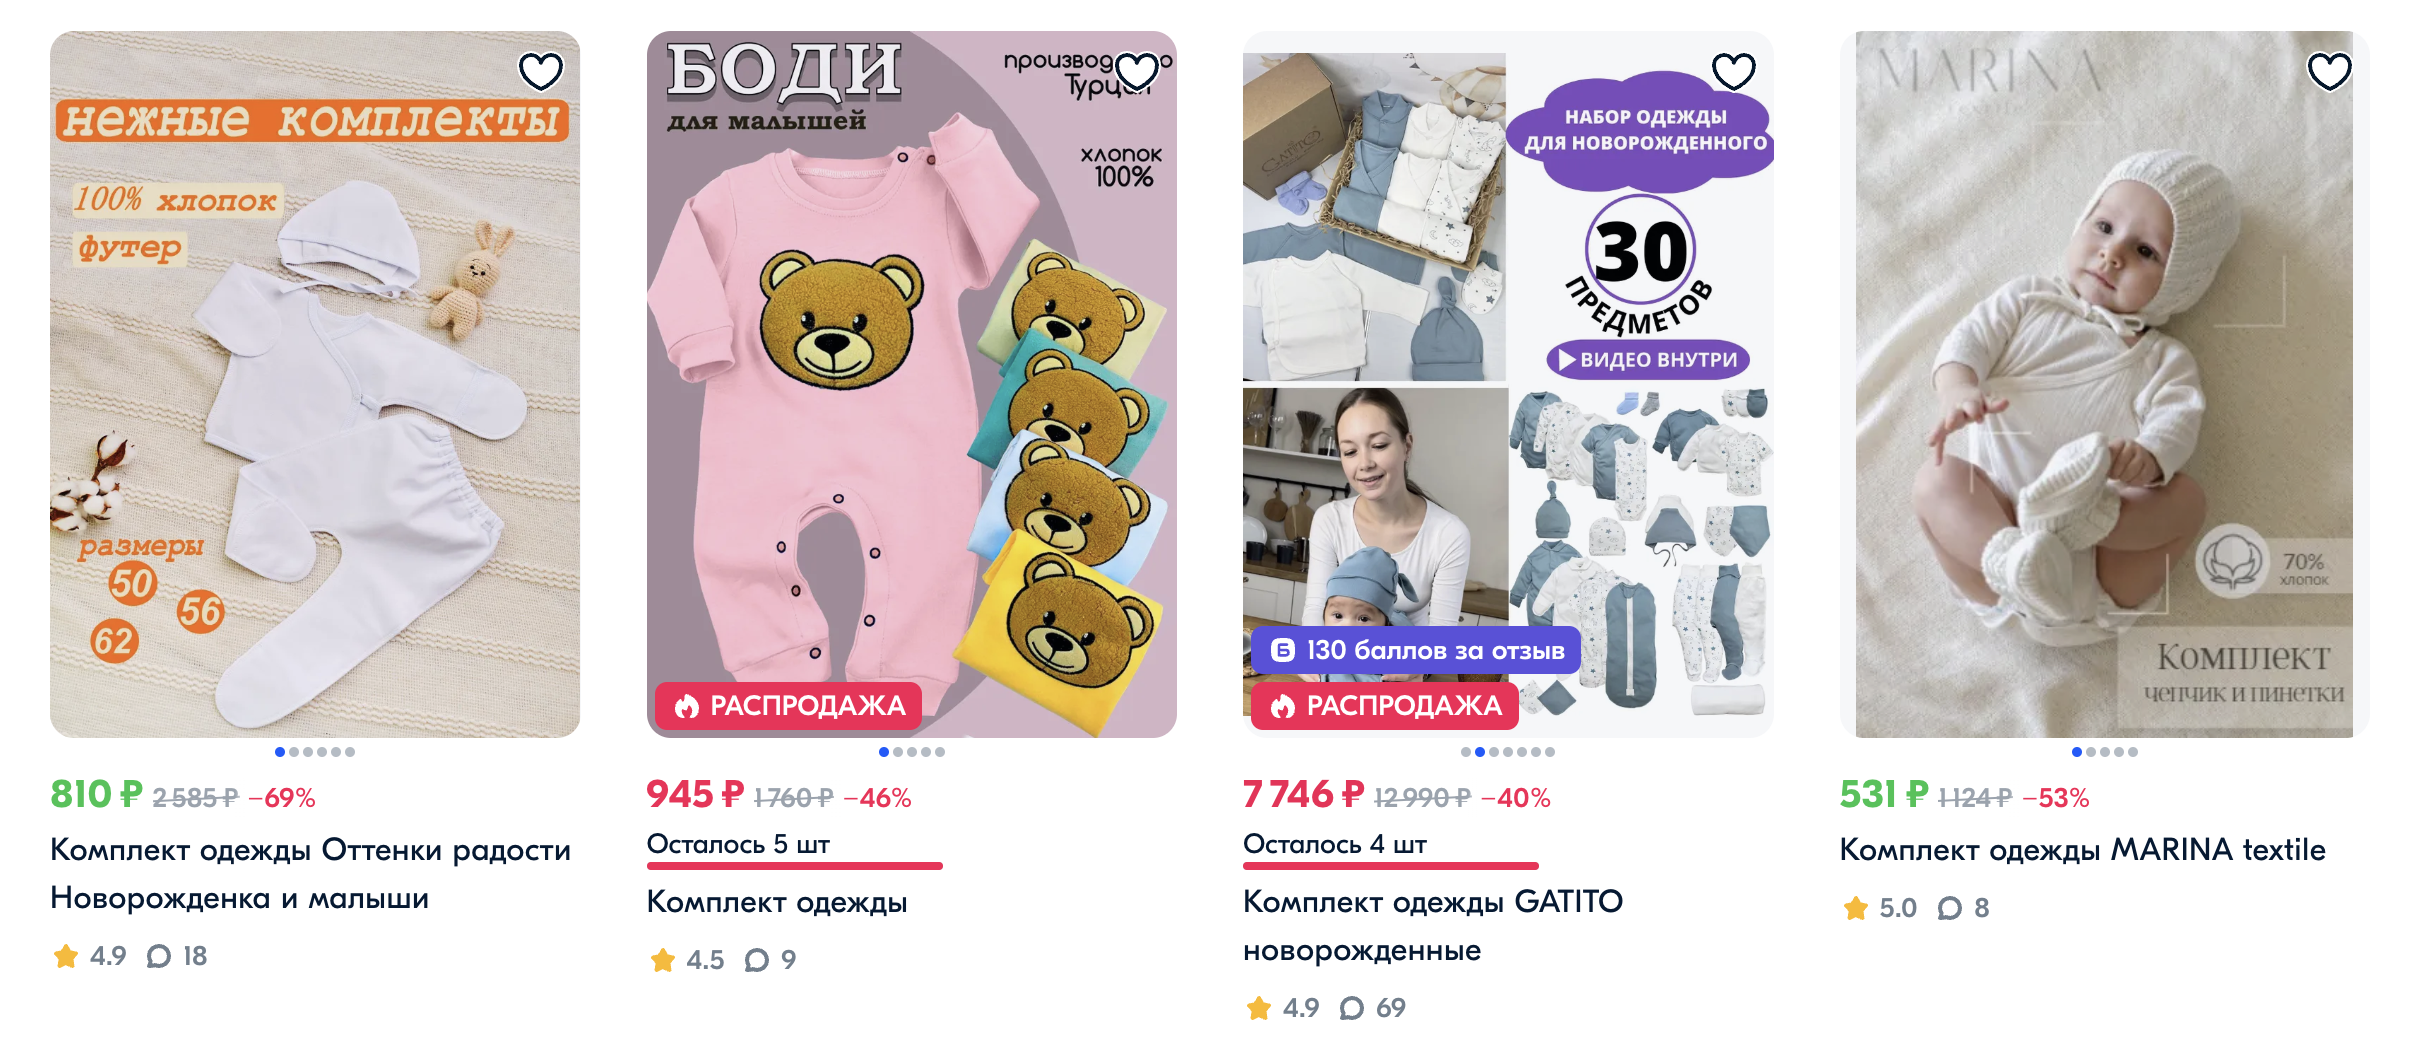 Решили купить набор одежды для новорожденного из 30 предметов. Подобные комплекты можно найти на маркетплейсах. Источник: ozon.ru